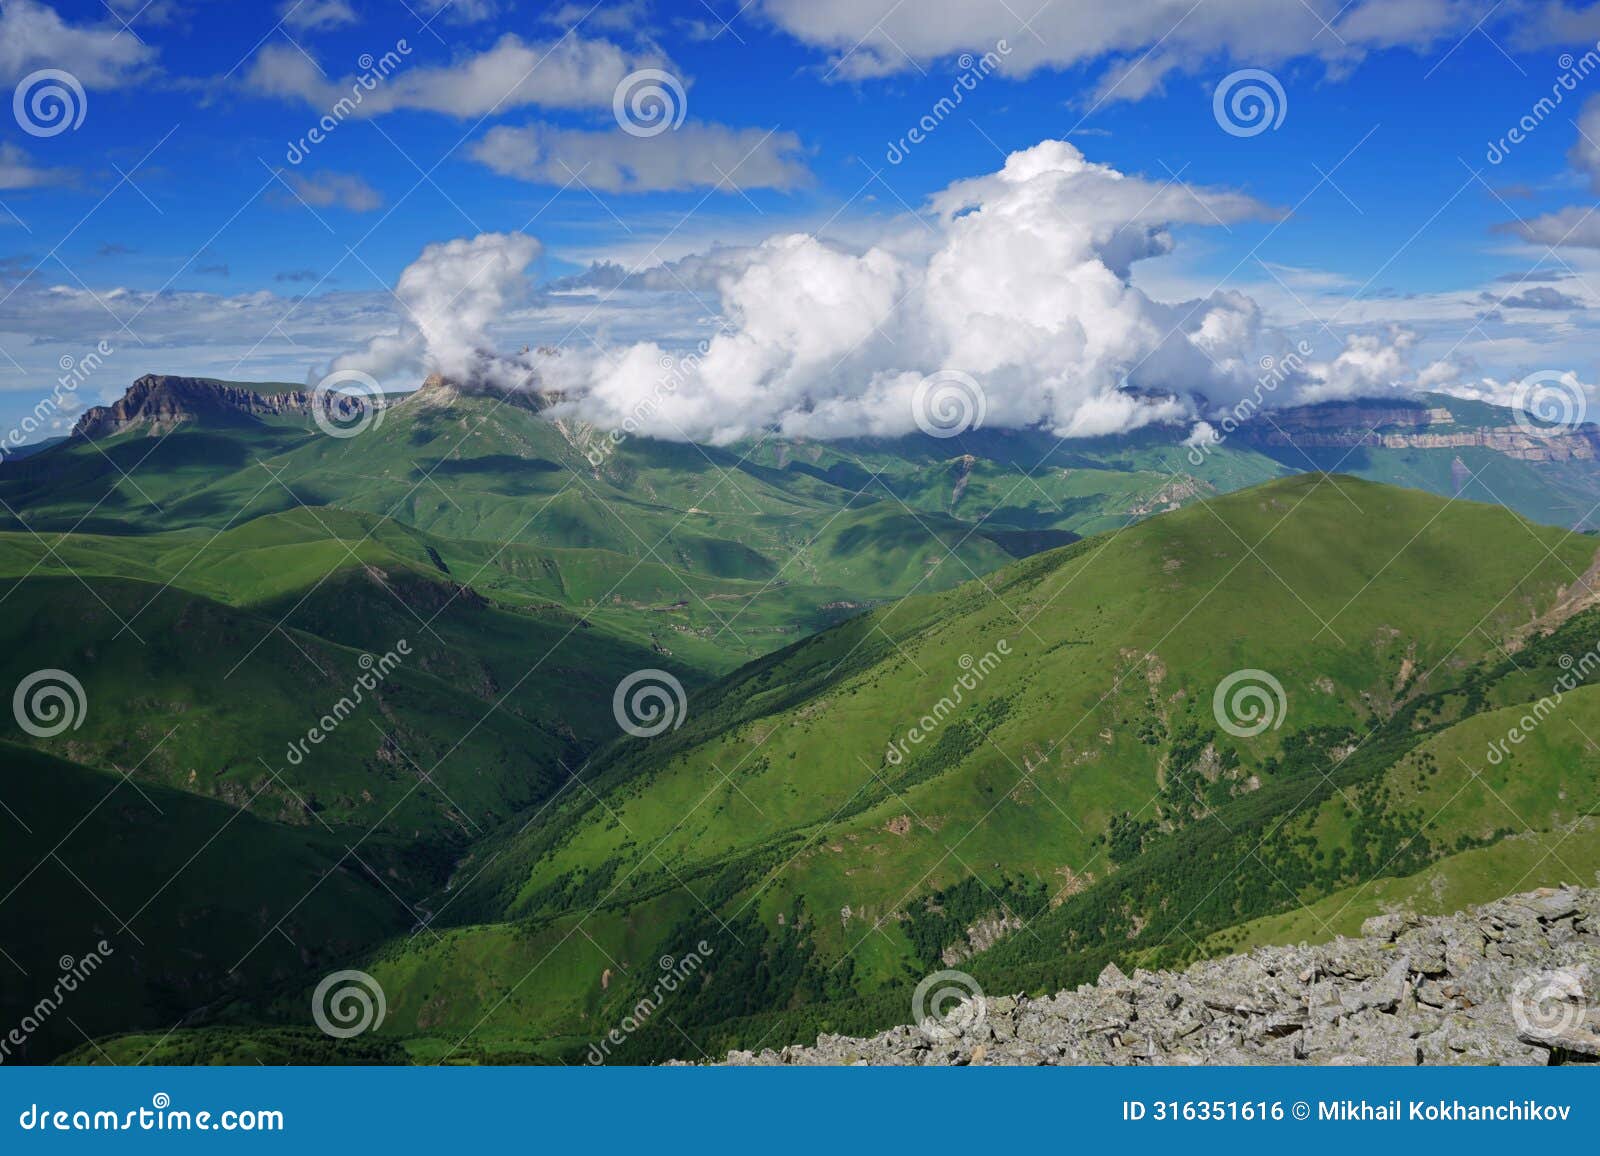 summer landscape in caucasus mountains